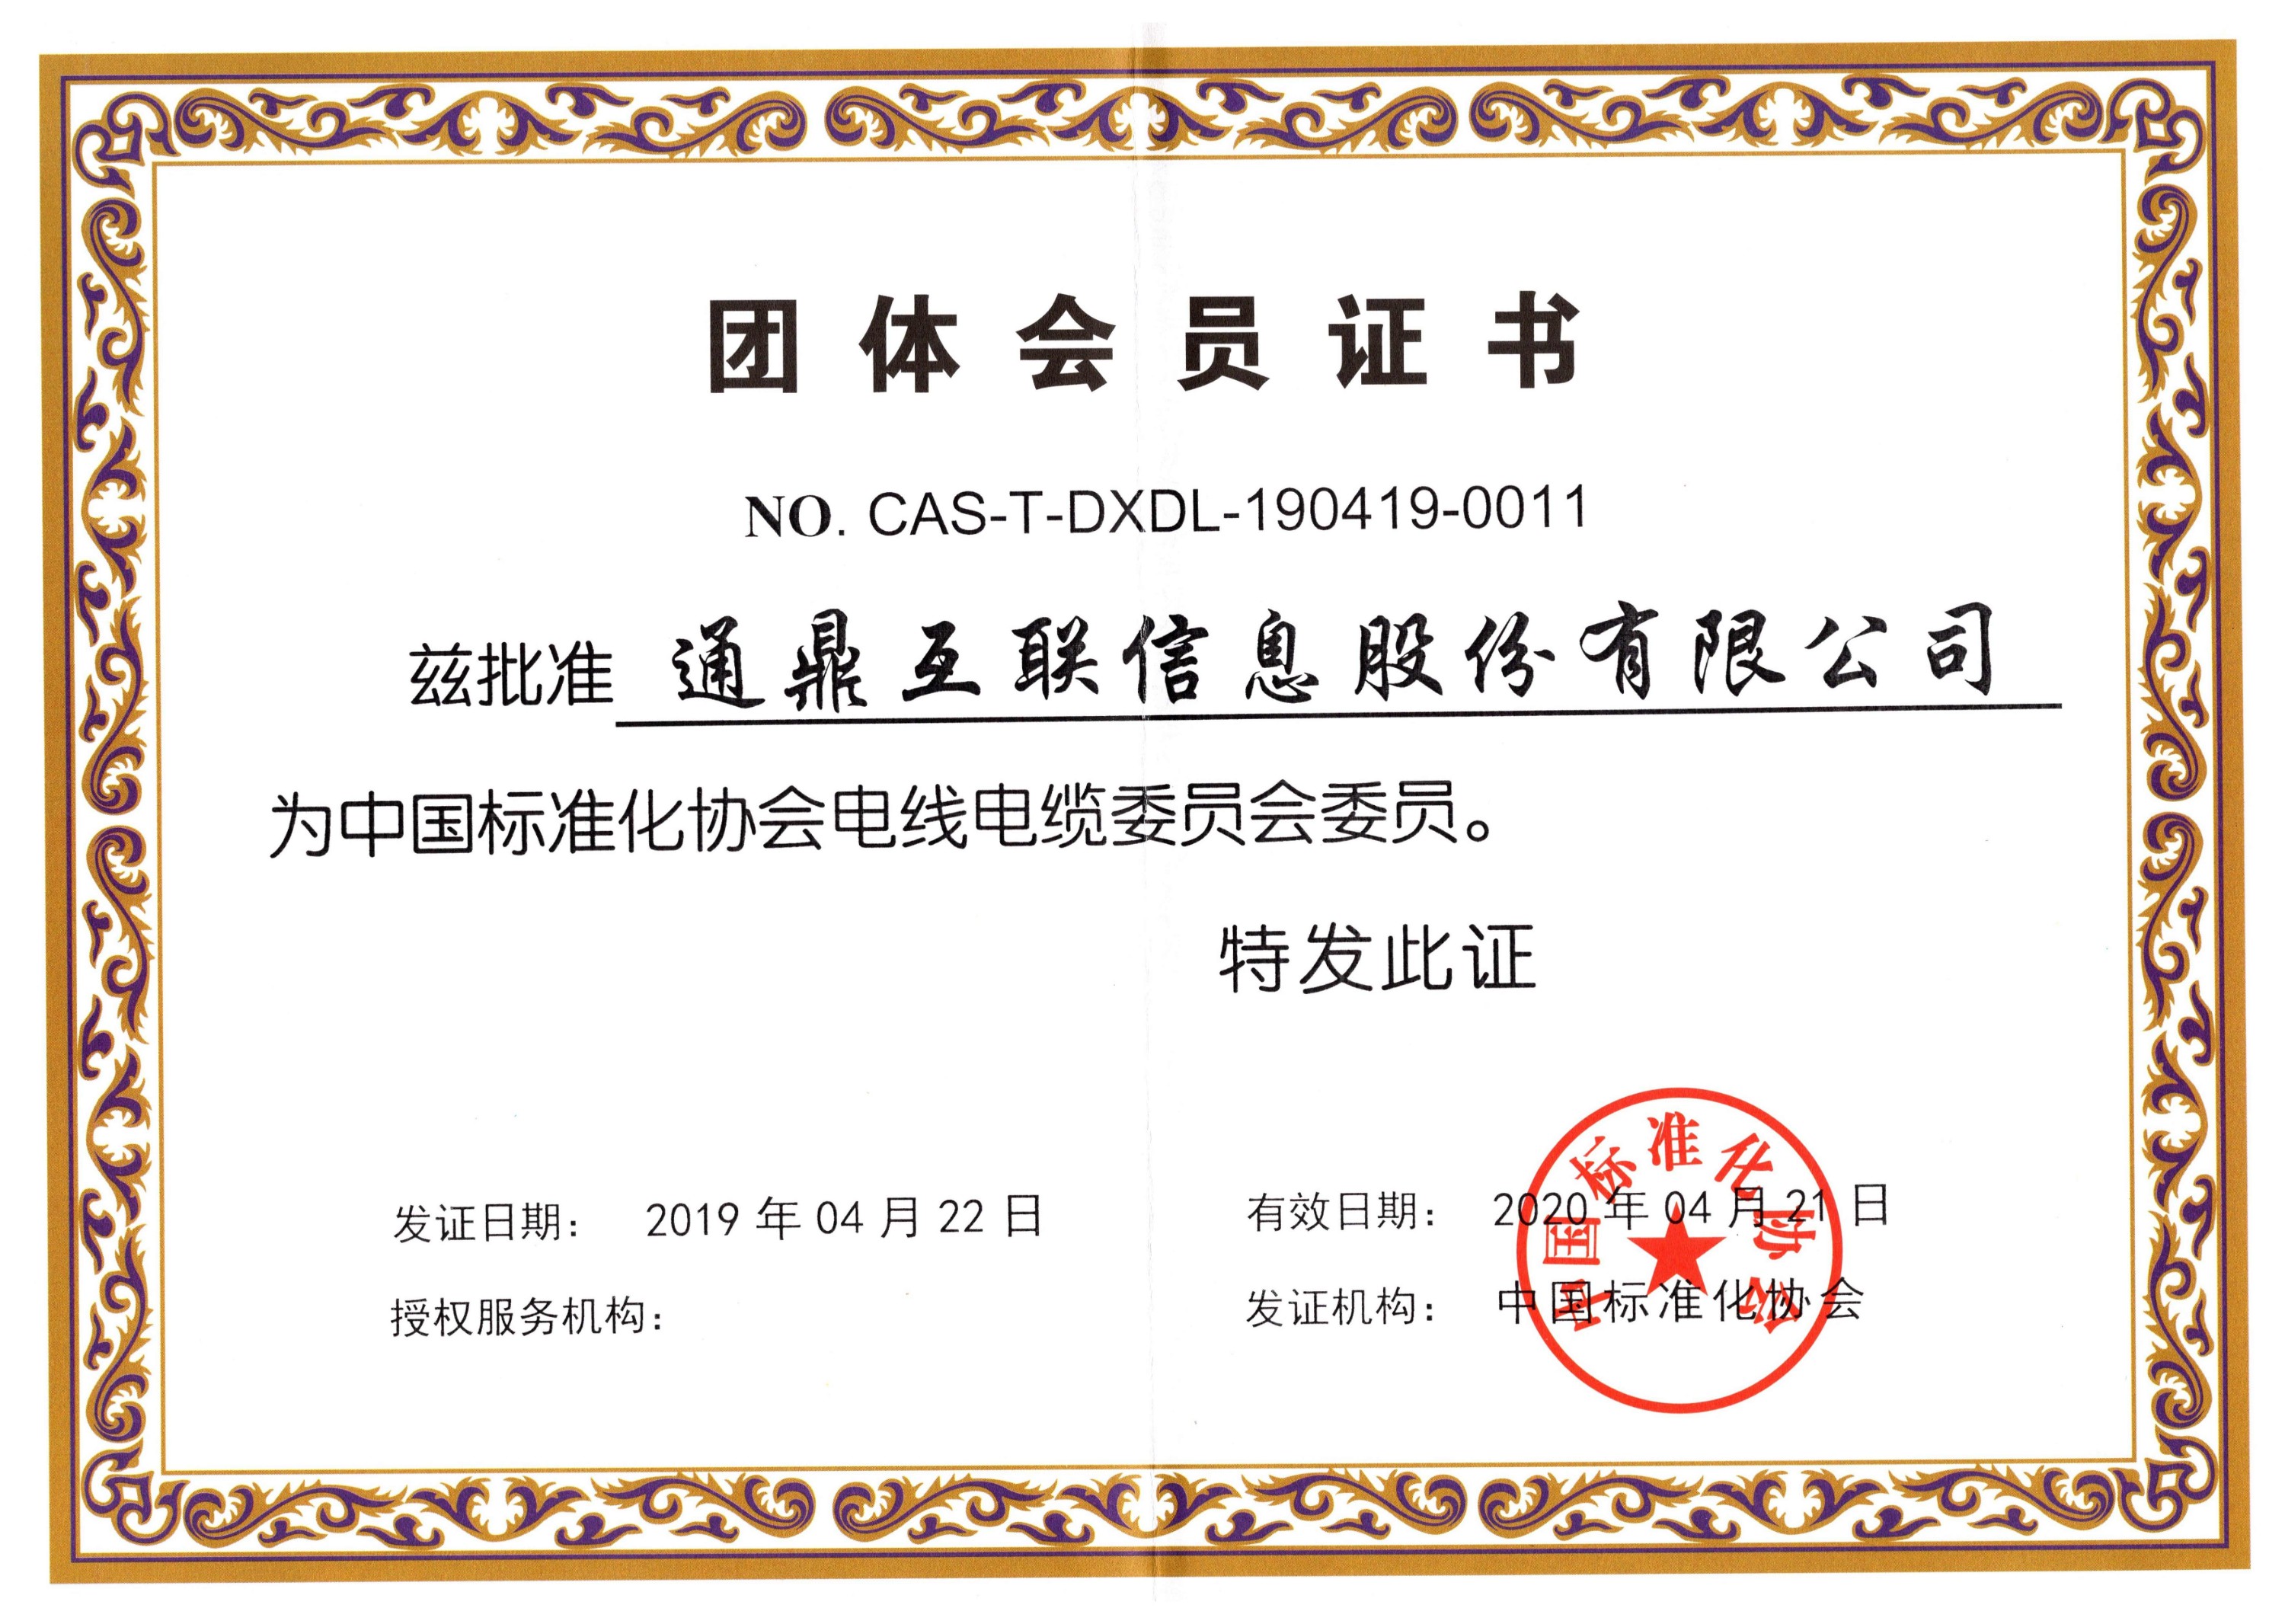 28中国标准化协会全国电线电缆委员会证书